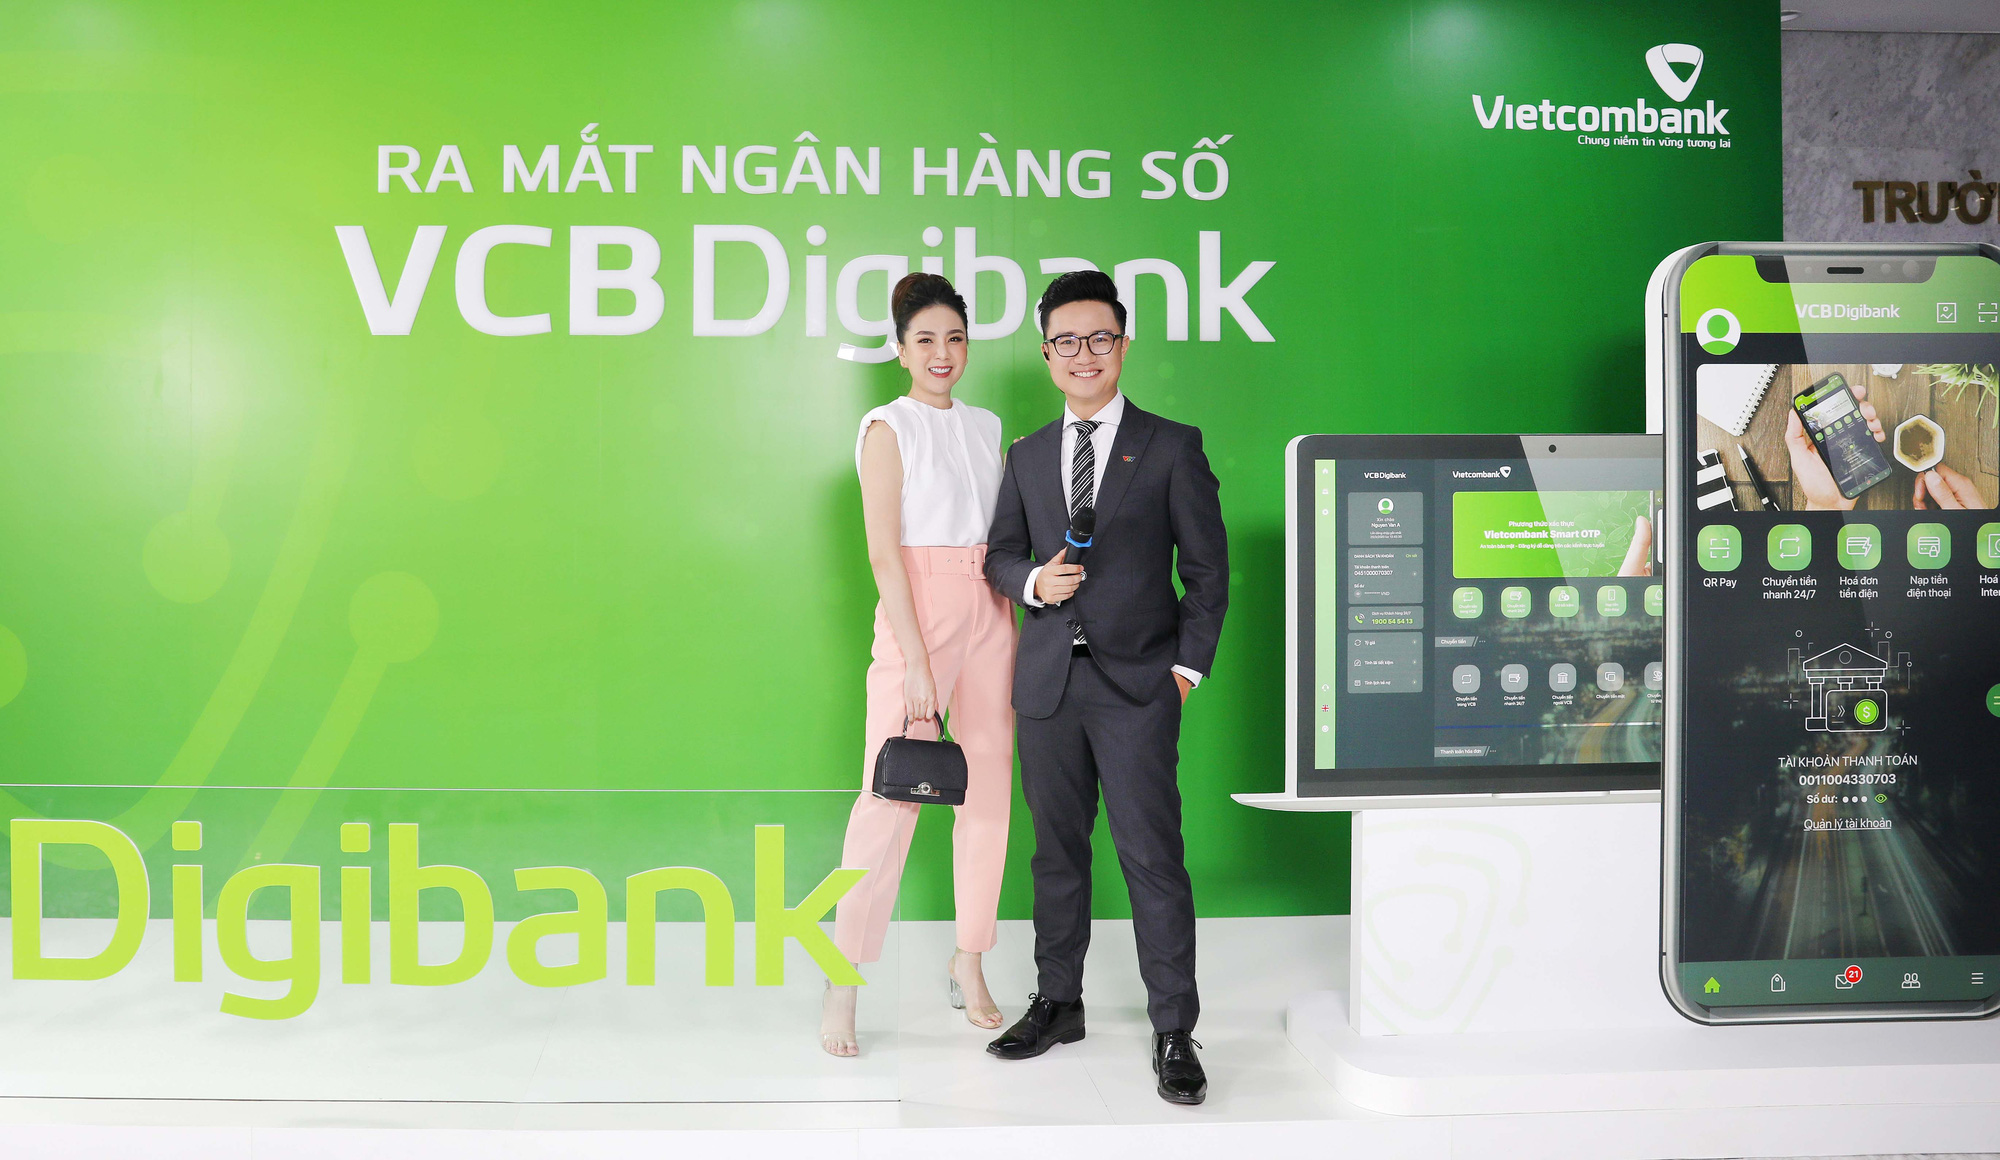 Vietcombank ra mắt dịch vụ Ngân hàng số VCB Digibank - Ảnh 5.